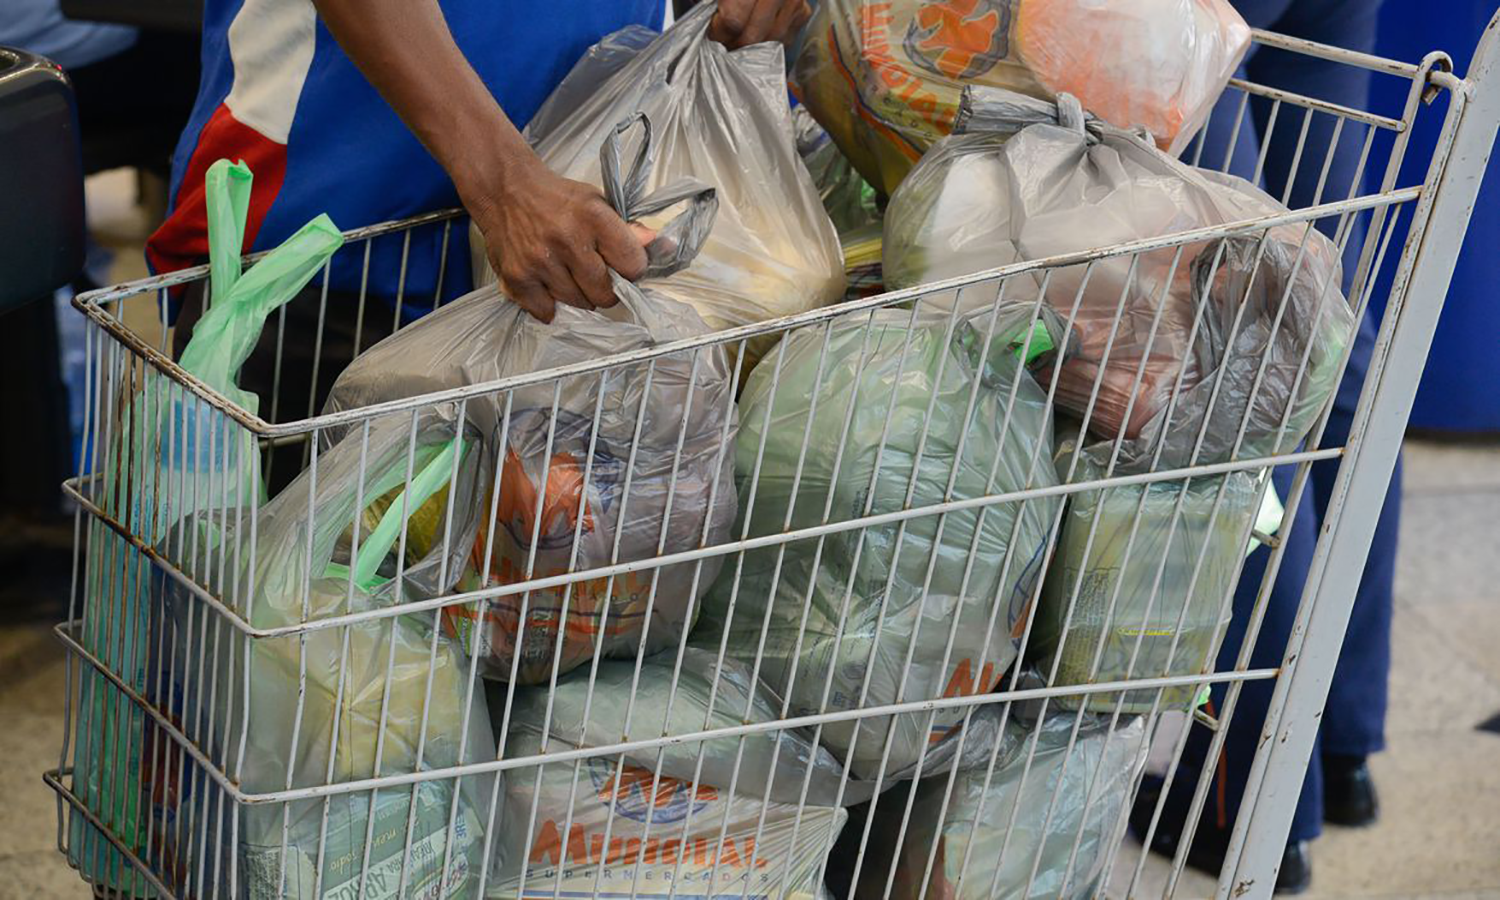 Justiça Eleitoral restitui para prefeitura cestas básicas apreendidas nas eleições